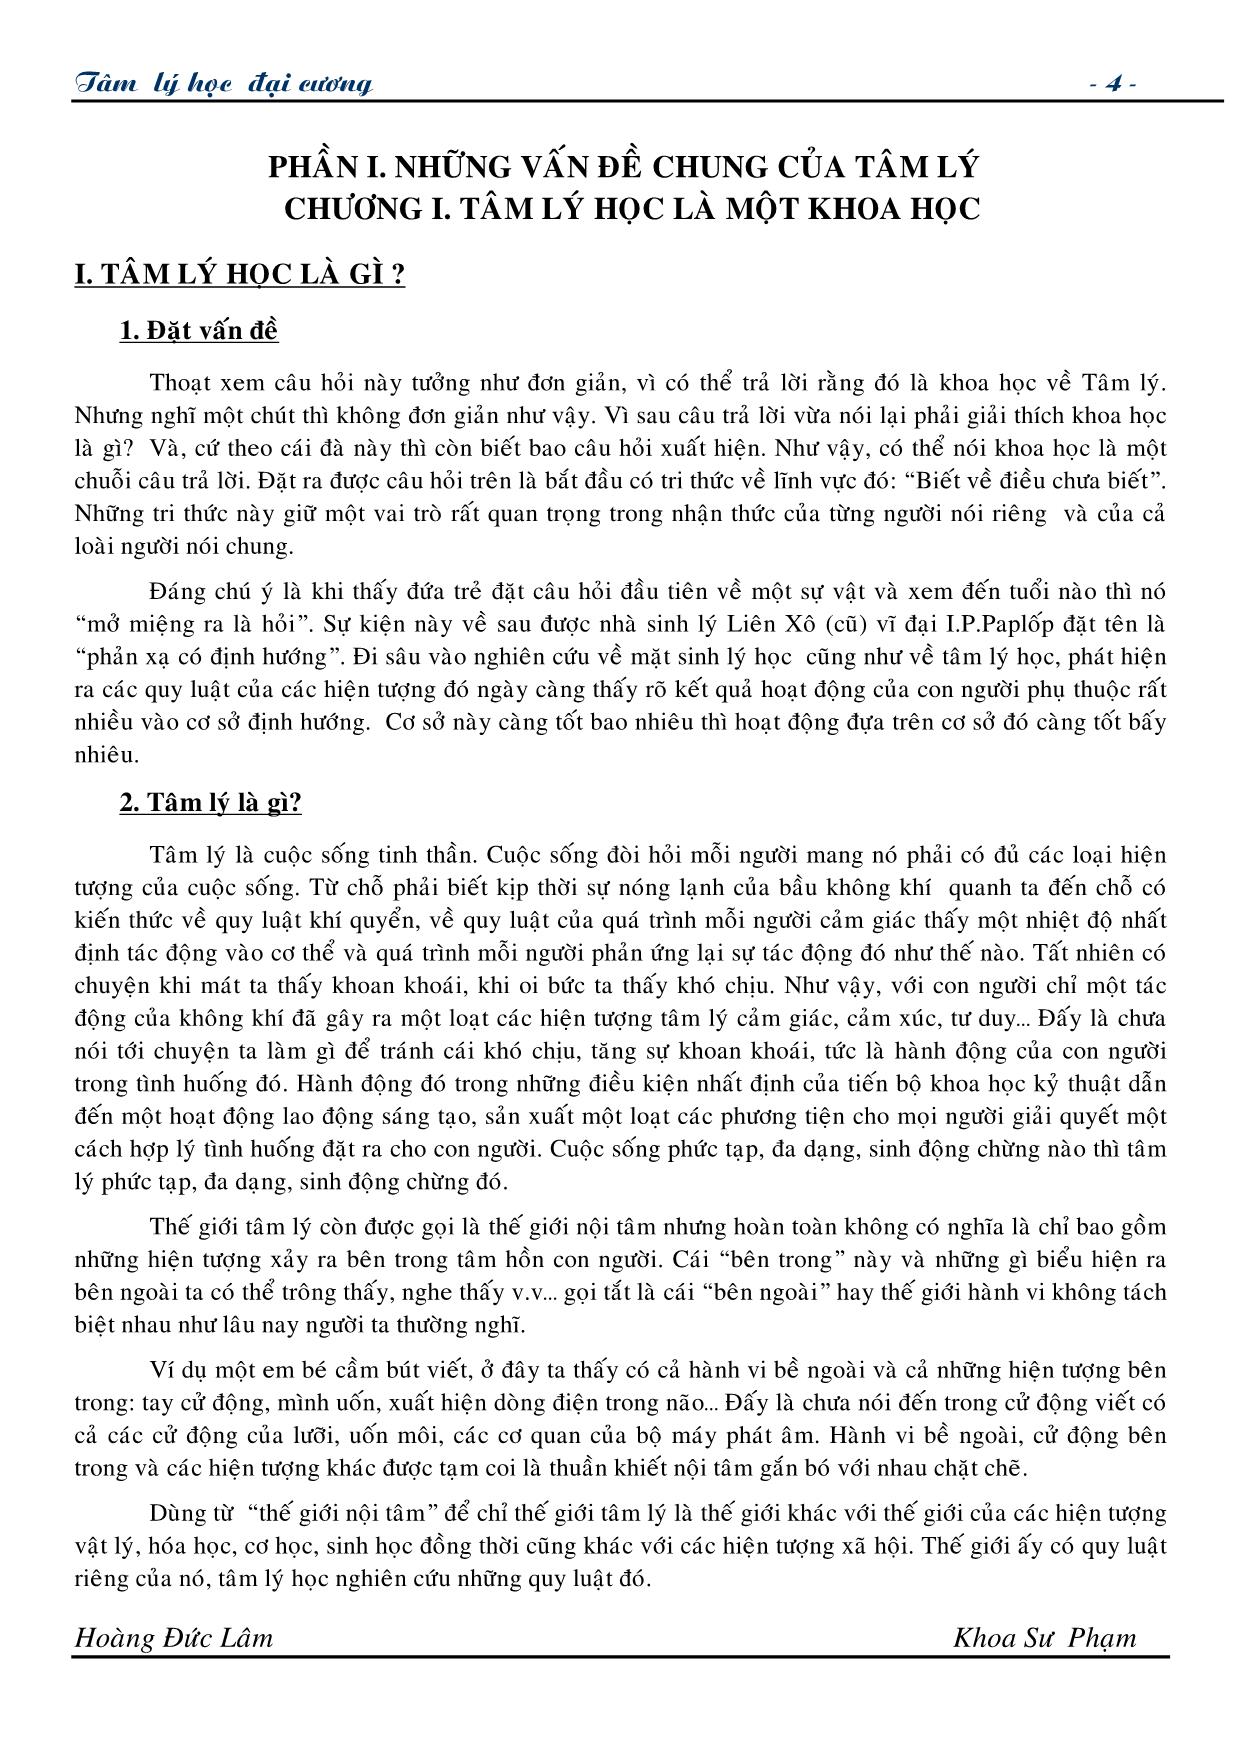 Giáo trình Tâm lí học đại cương (Phần 1) trang 4